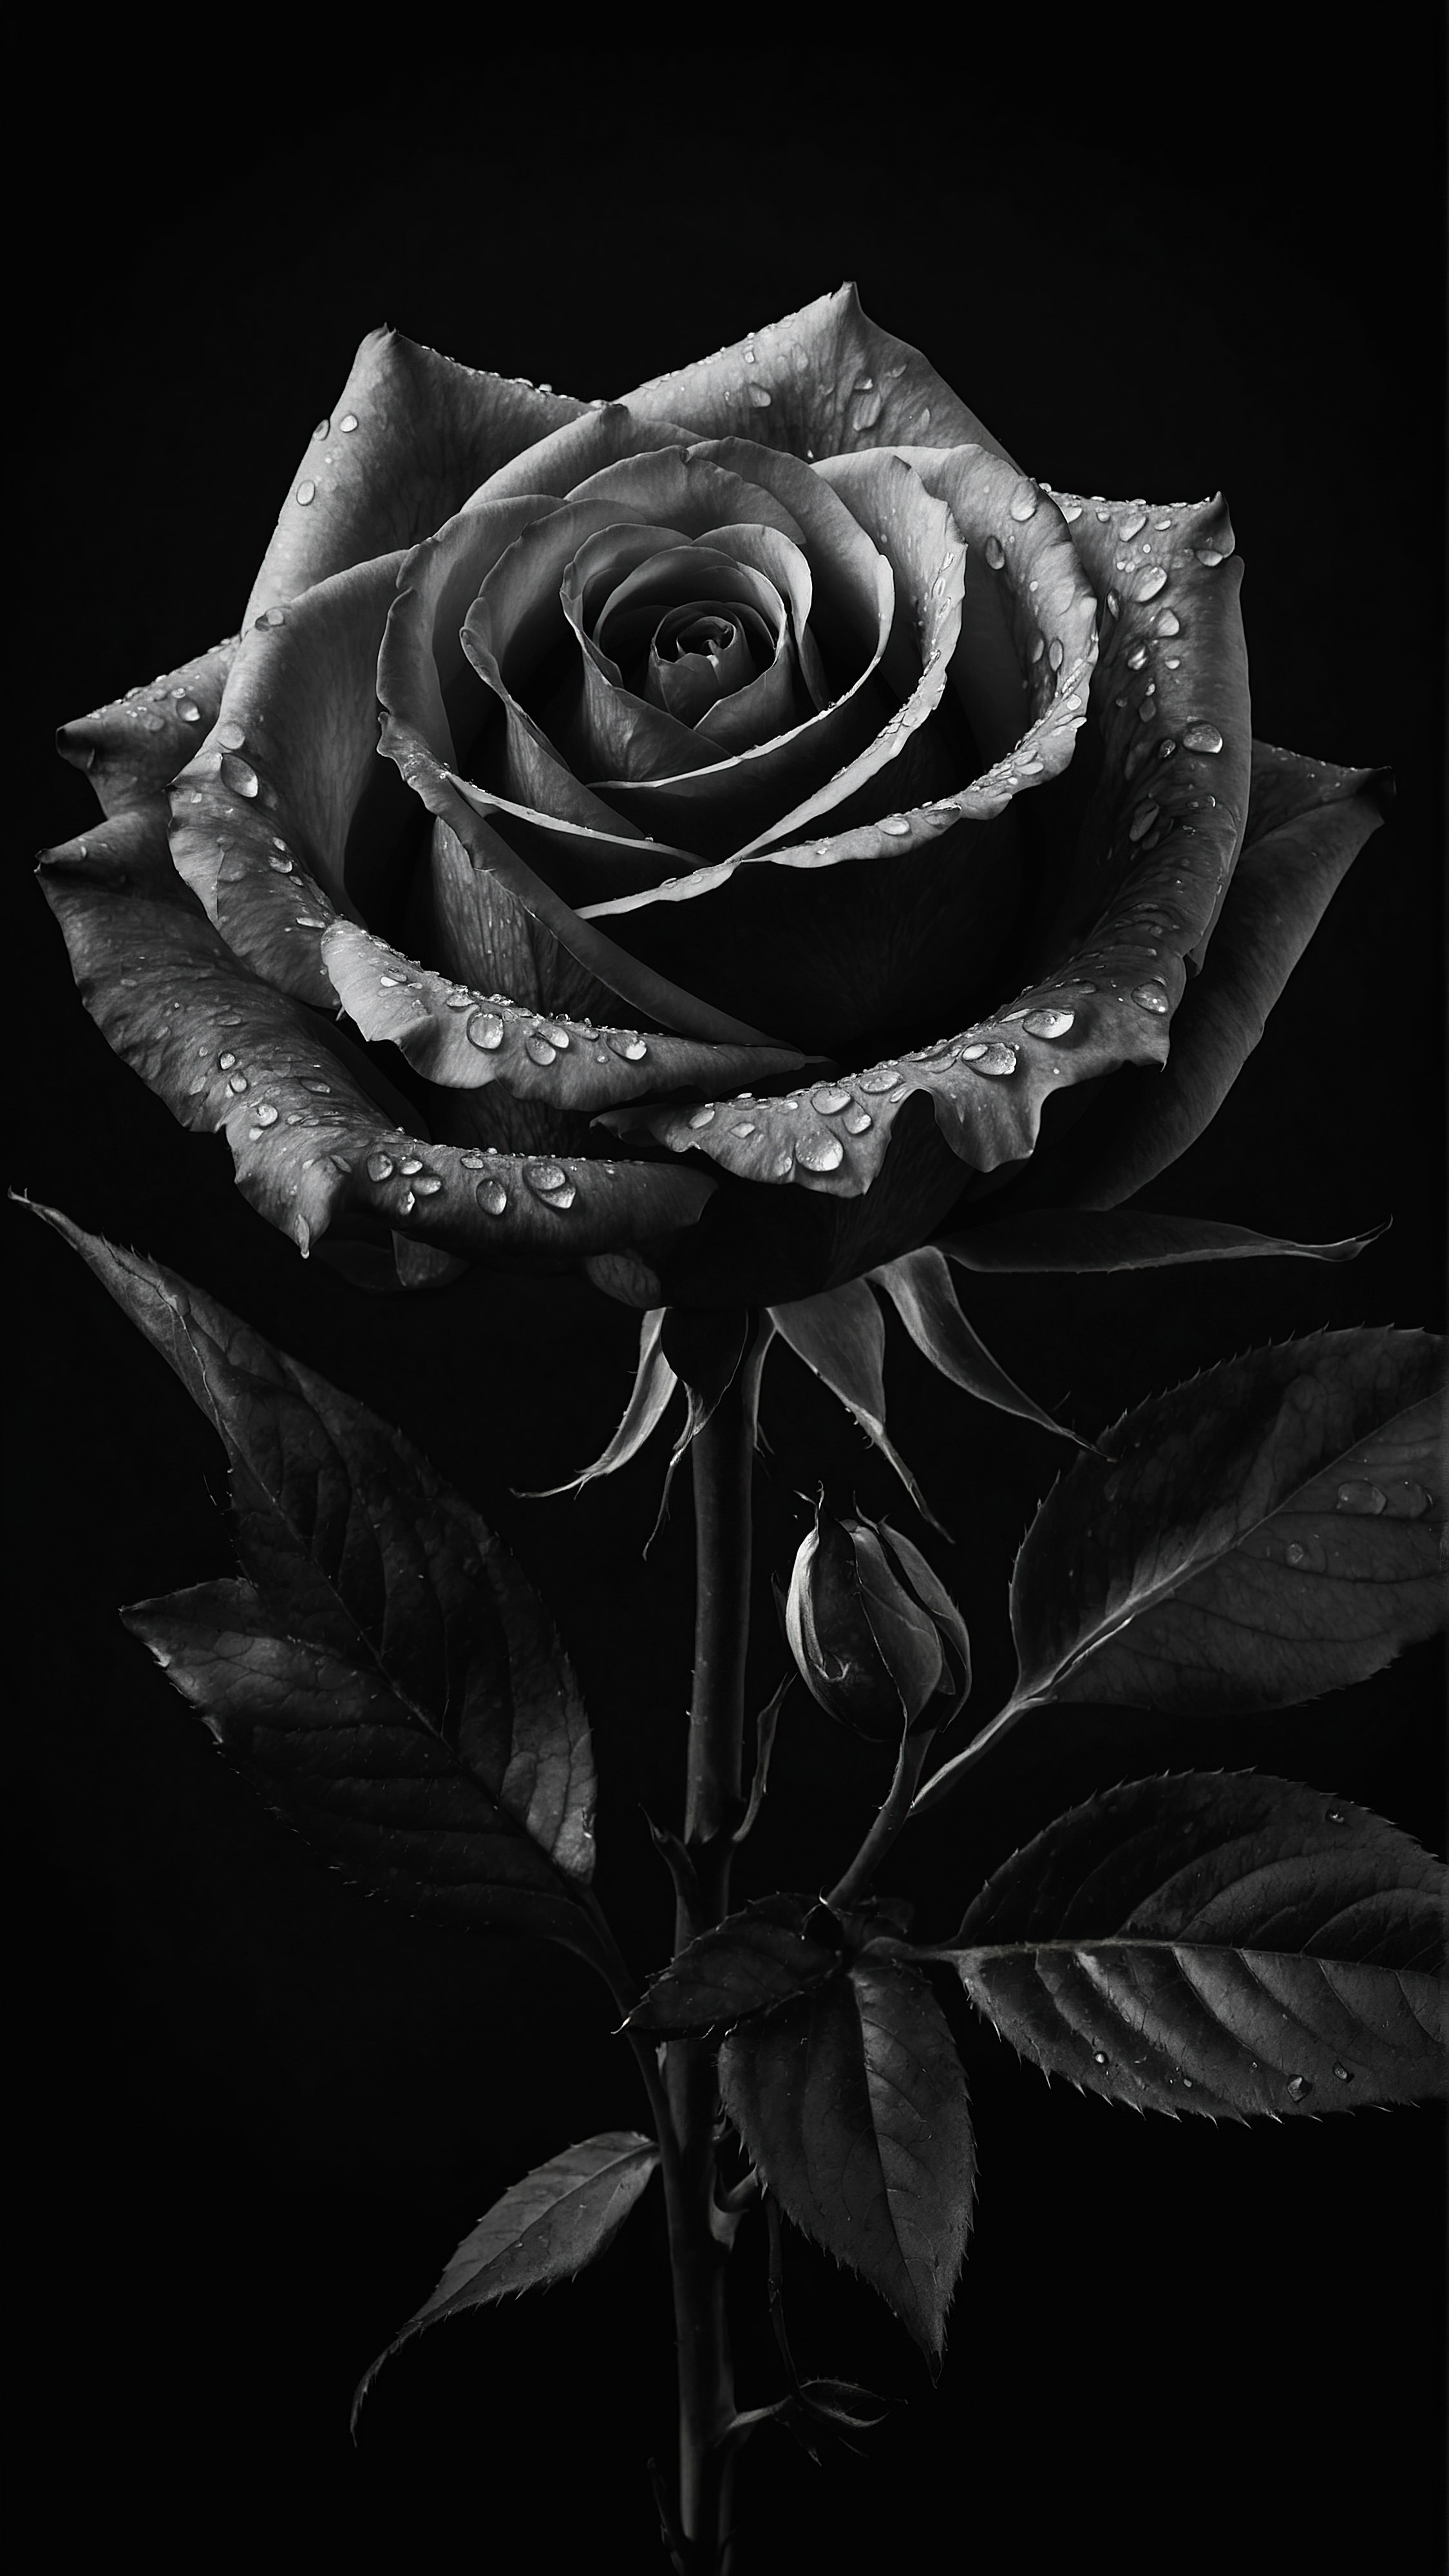 Appréciez l'élégance d'une rose aux détails intricats, placée contre un arrière-plan sombre, à travers notre beau fond d'écran noir esthétique pour iPhone.